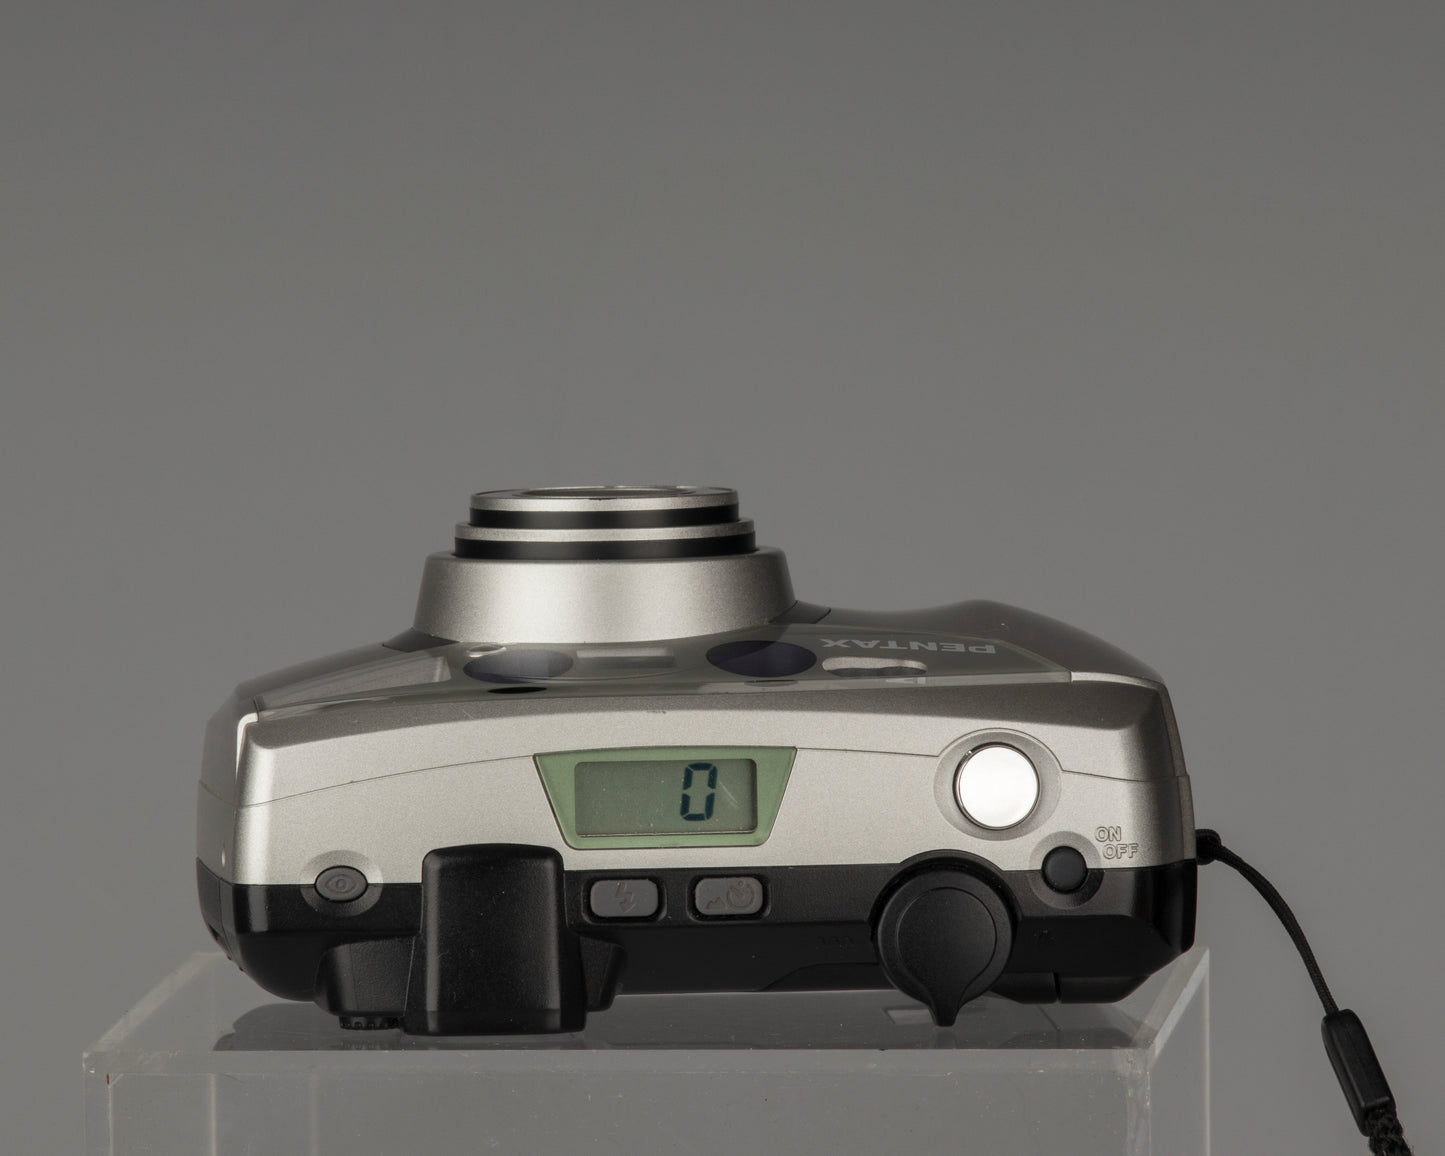 Pentax Espio 105S 35mm camera